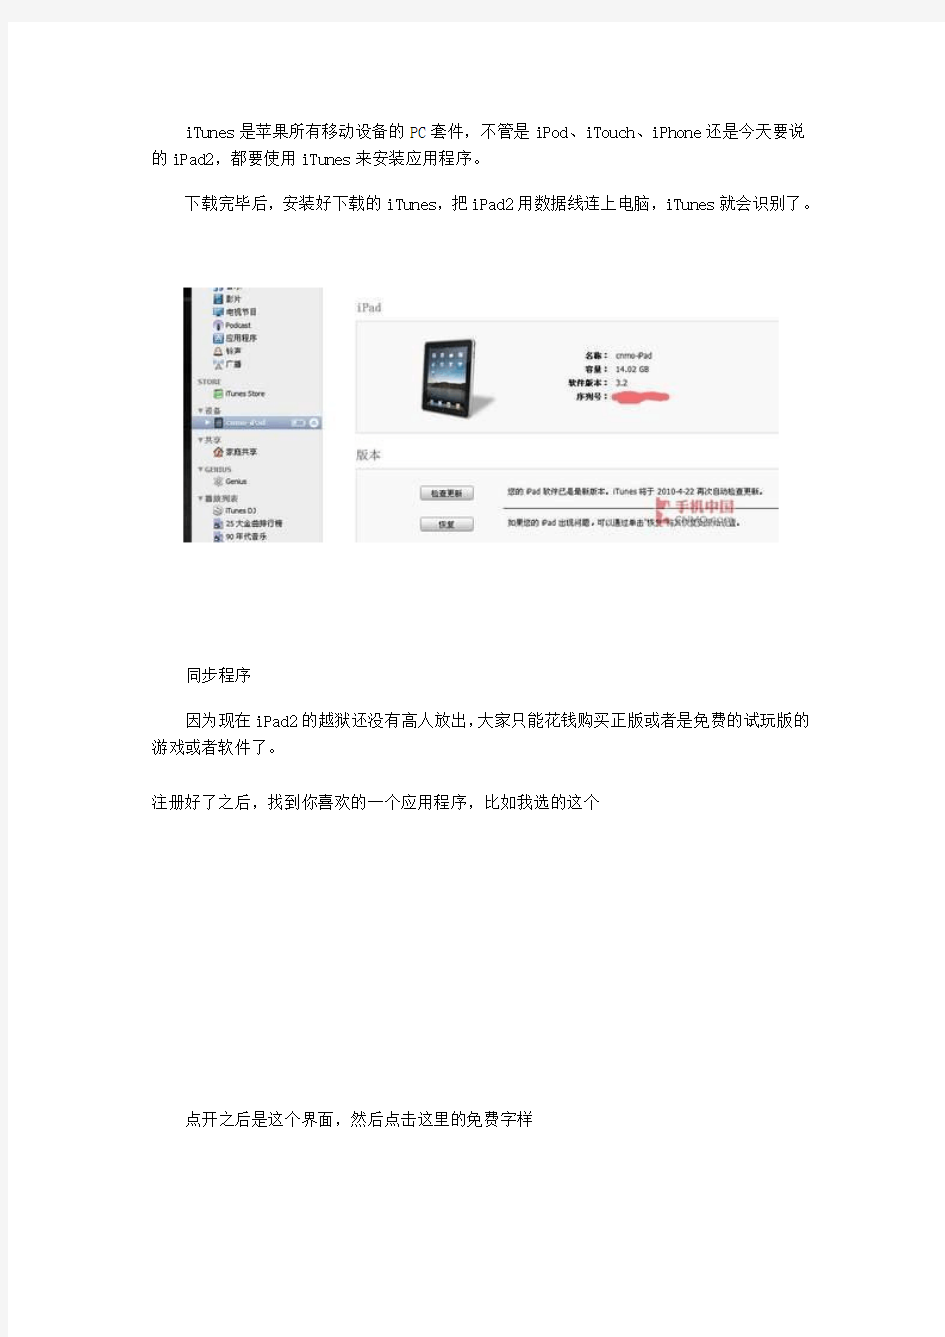 苹果最新iPad2中文版使用说明书(完整超详细)